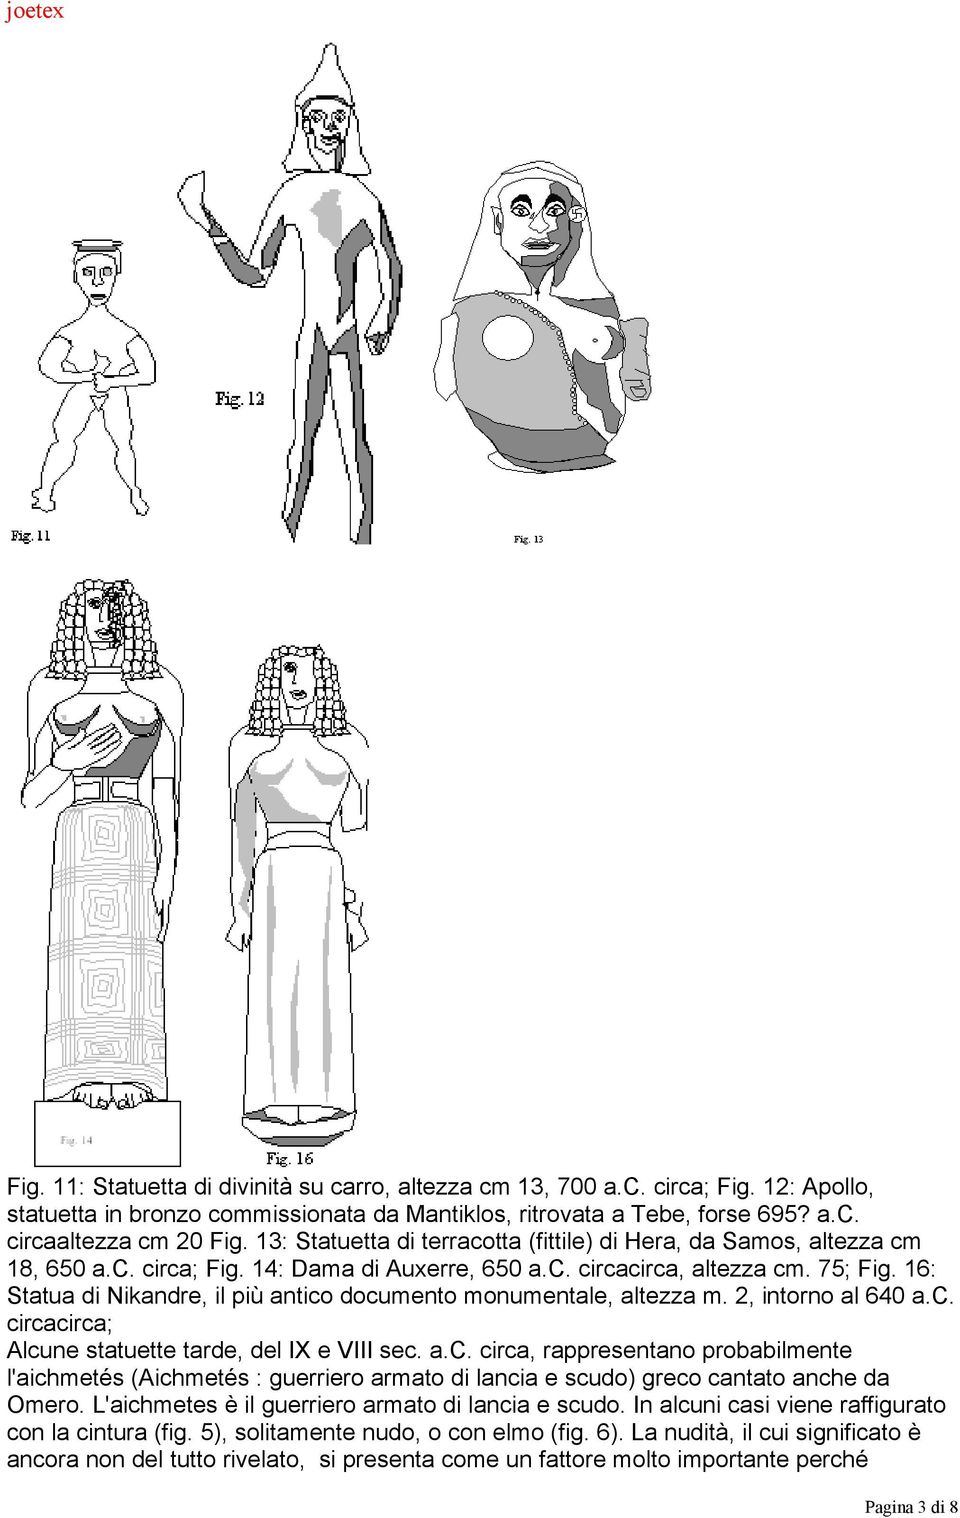 16: Statua di Nikandre, il più antico documento monumentale, altezza m. 2, intorno al 640 a.c. circacirca; Alcune statuette tarde, del IX e VIII sec. a.c. circa, rappresentano probabilmente l'aichmetés (Aichmetés : guerriero armato di lancia e scudo) greco cantato anche da Omero.